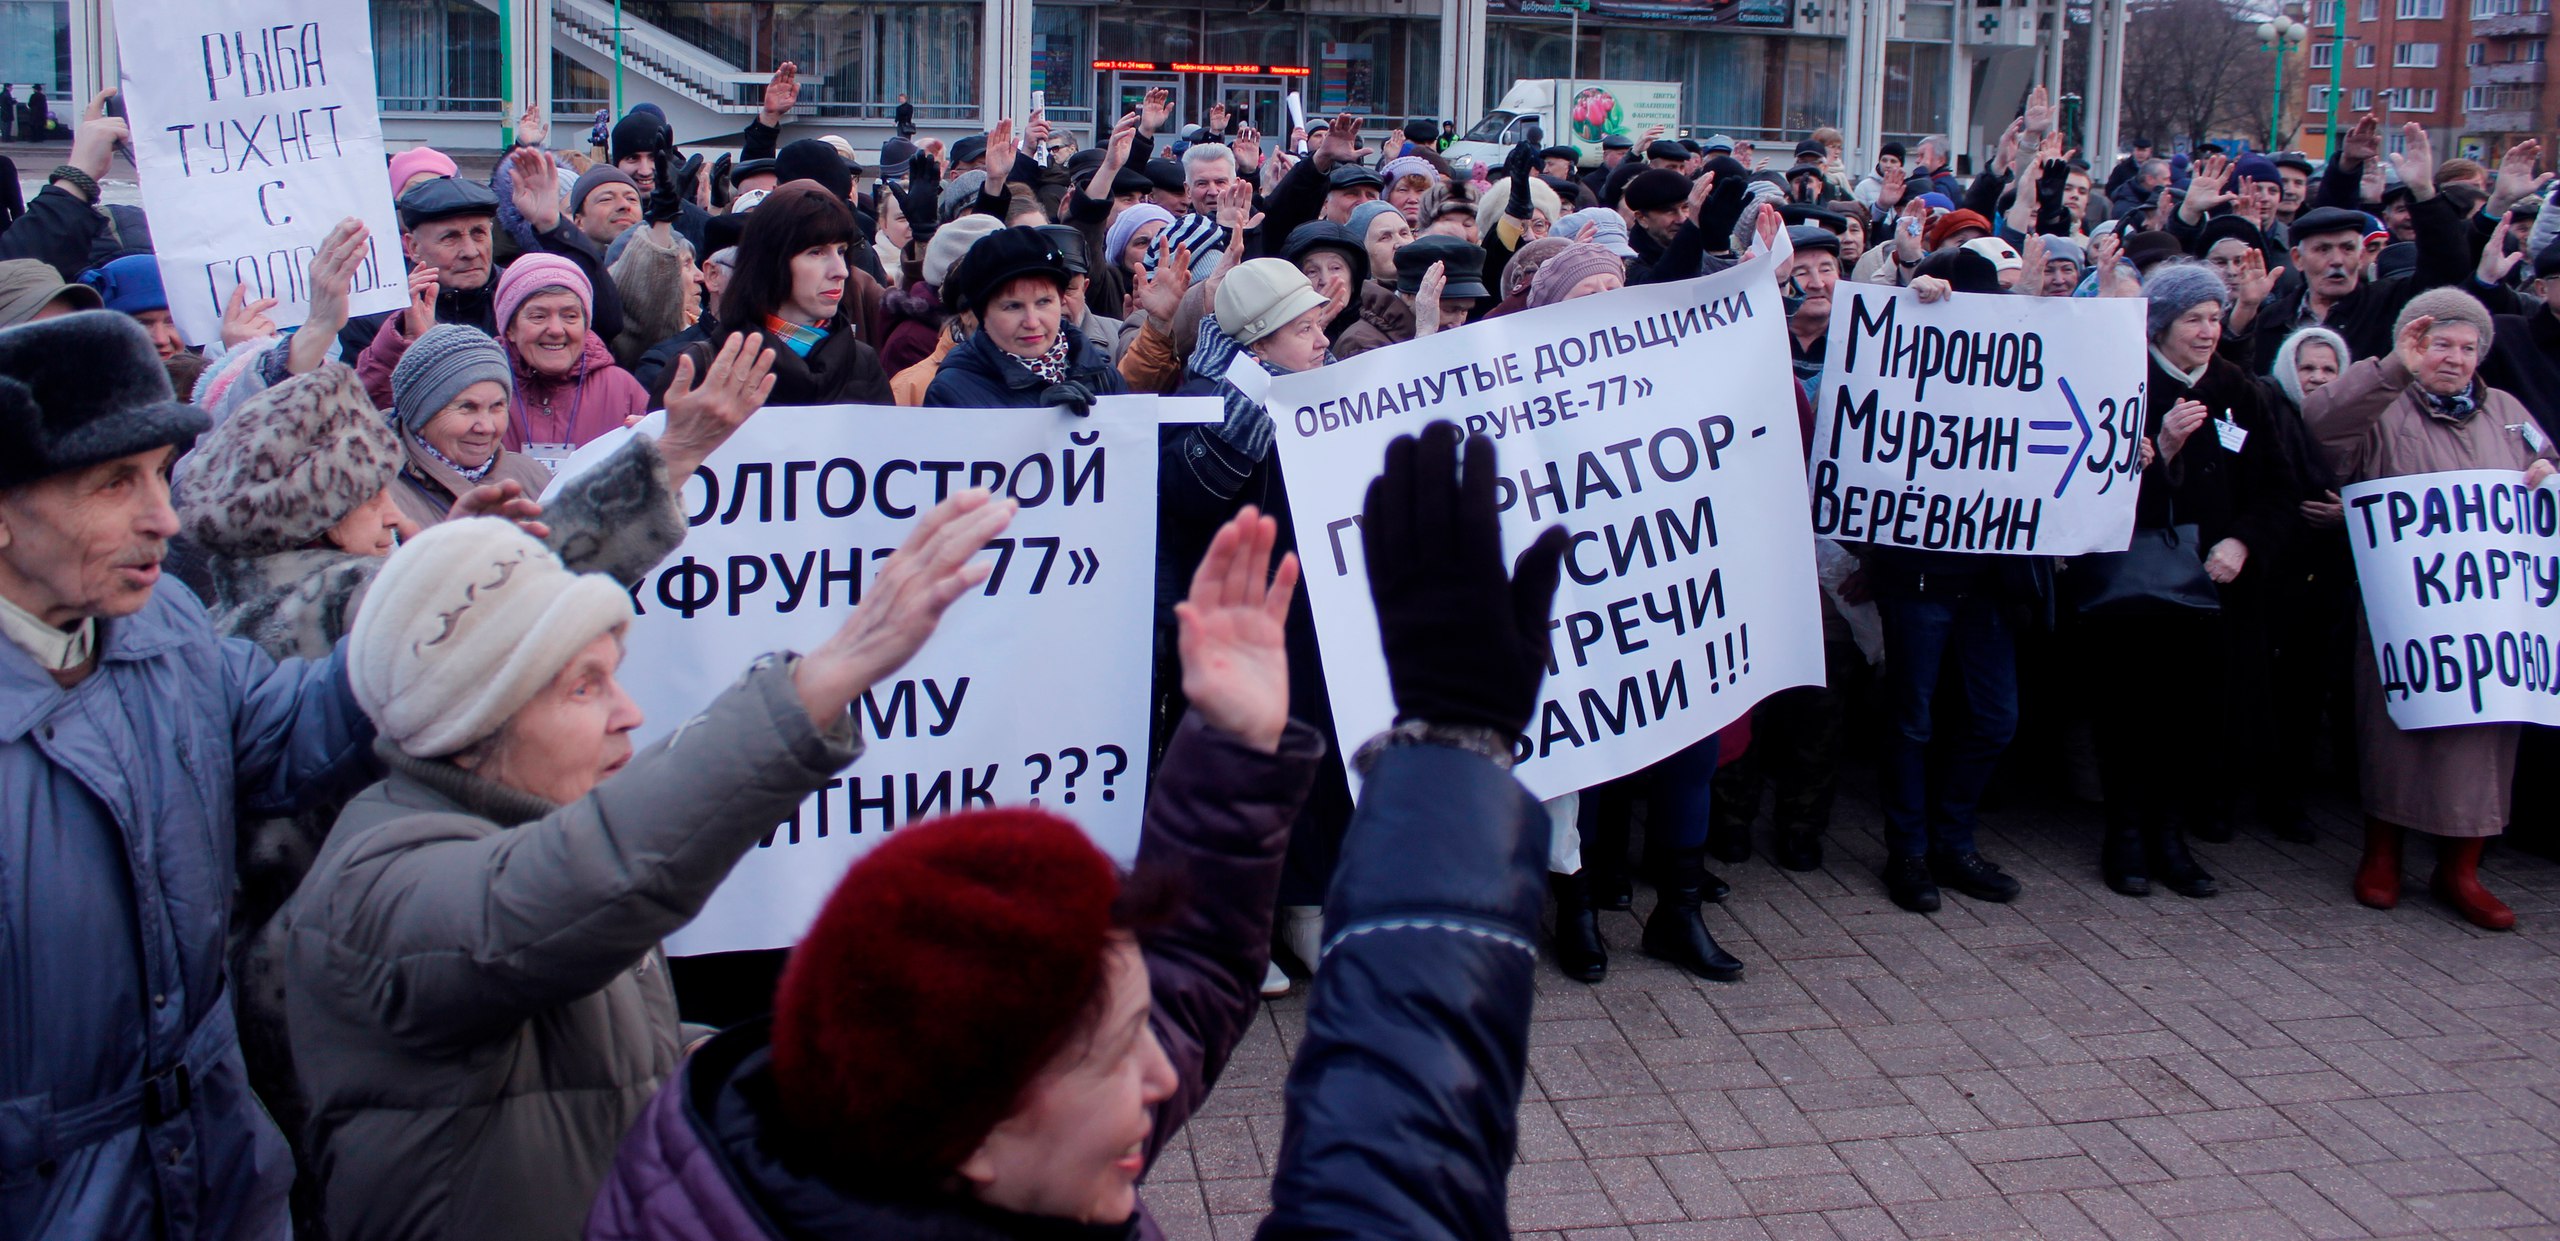 Эльхан Мардалиев против роста тарифов ЖКХ пикет КПРФ Ярославль. Попытка власть печать